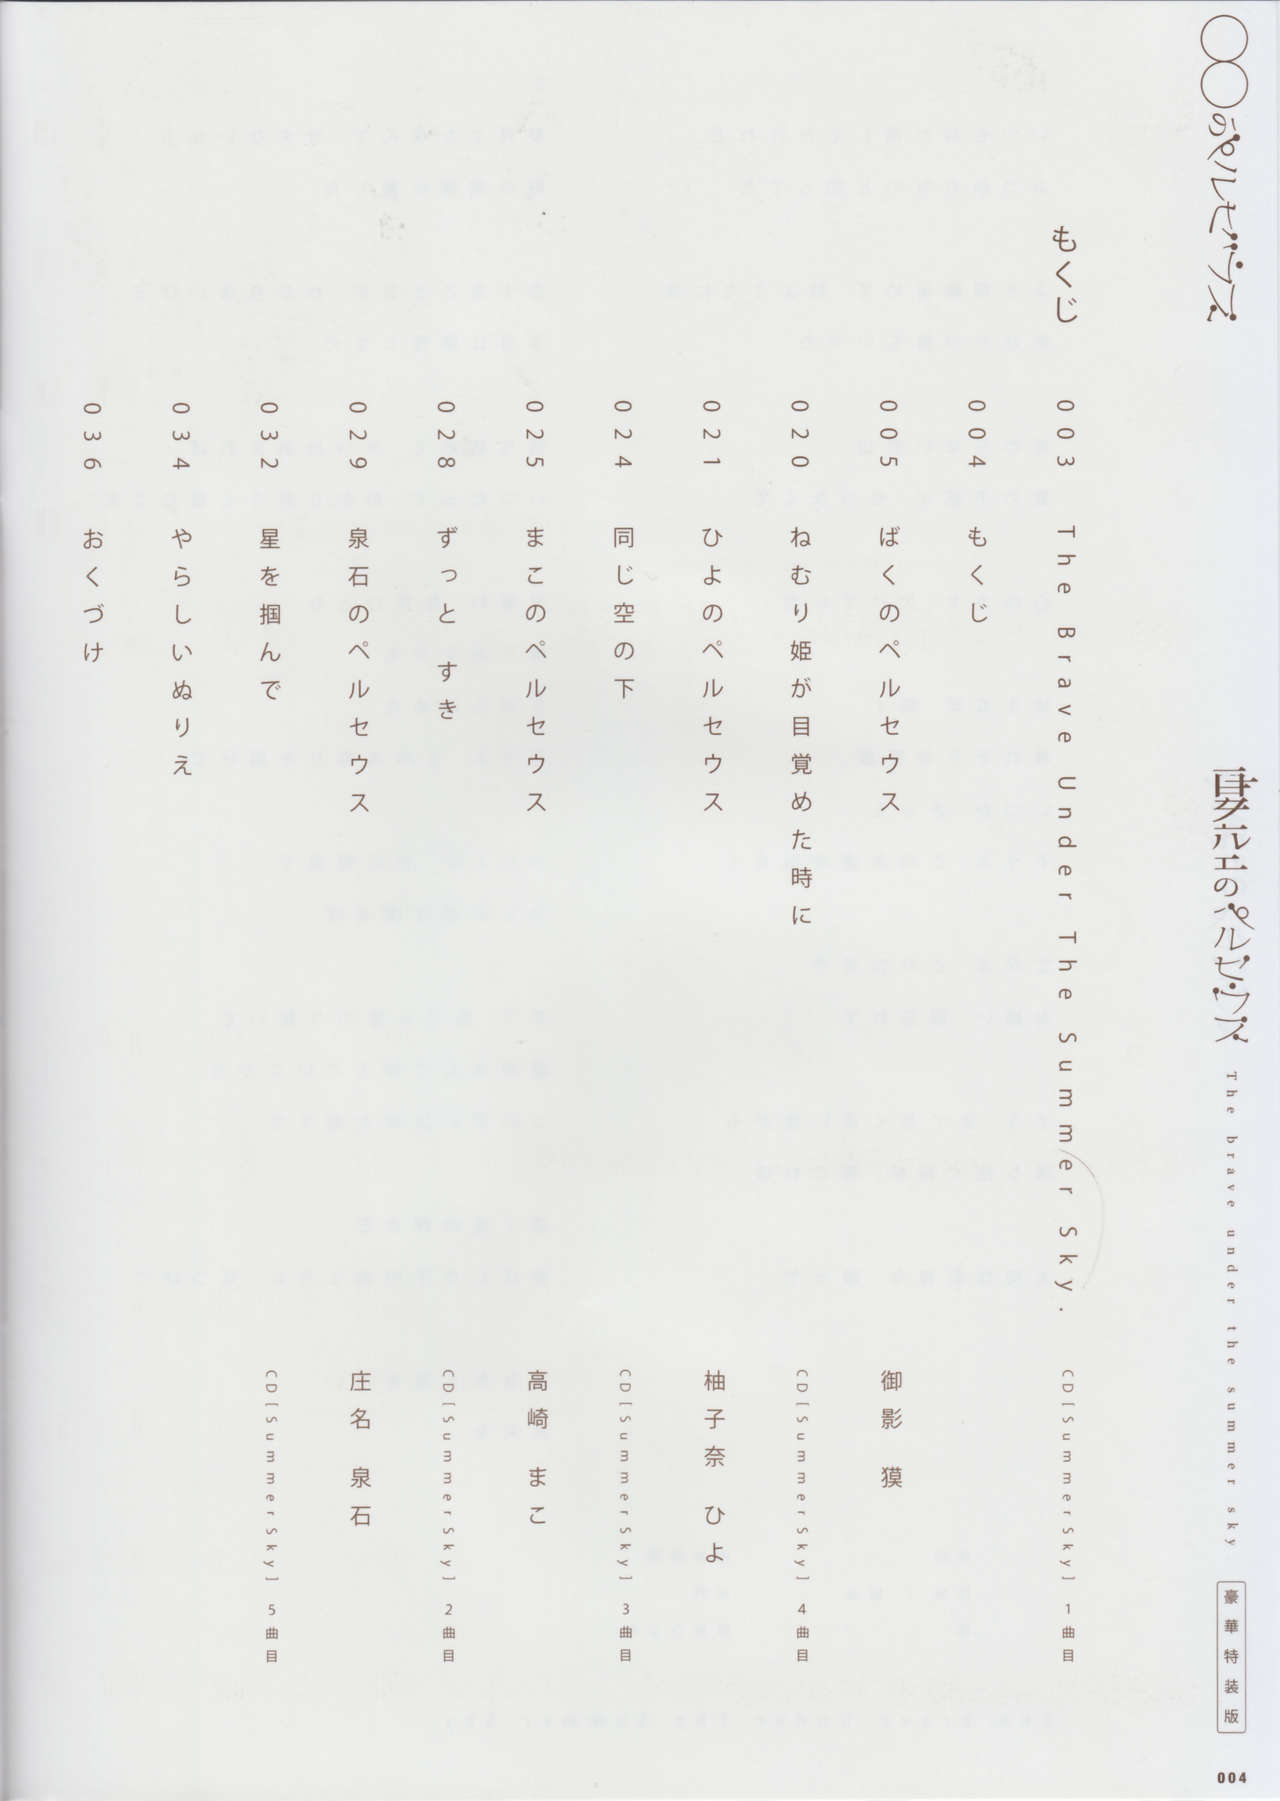 [minori] Natsuzora no Perseus Gouka-ban Omake Sasshi [minori] 夏空のペルセウス 豪華版おまけ冊子